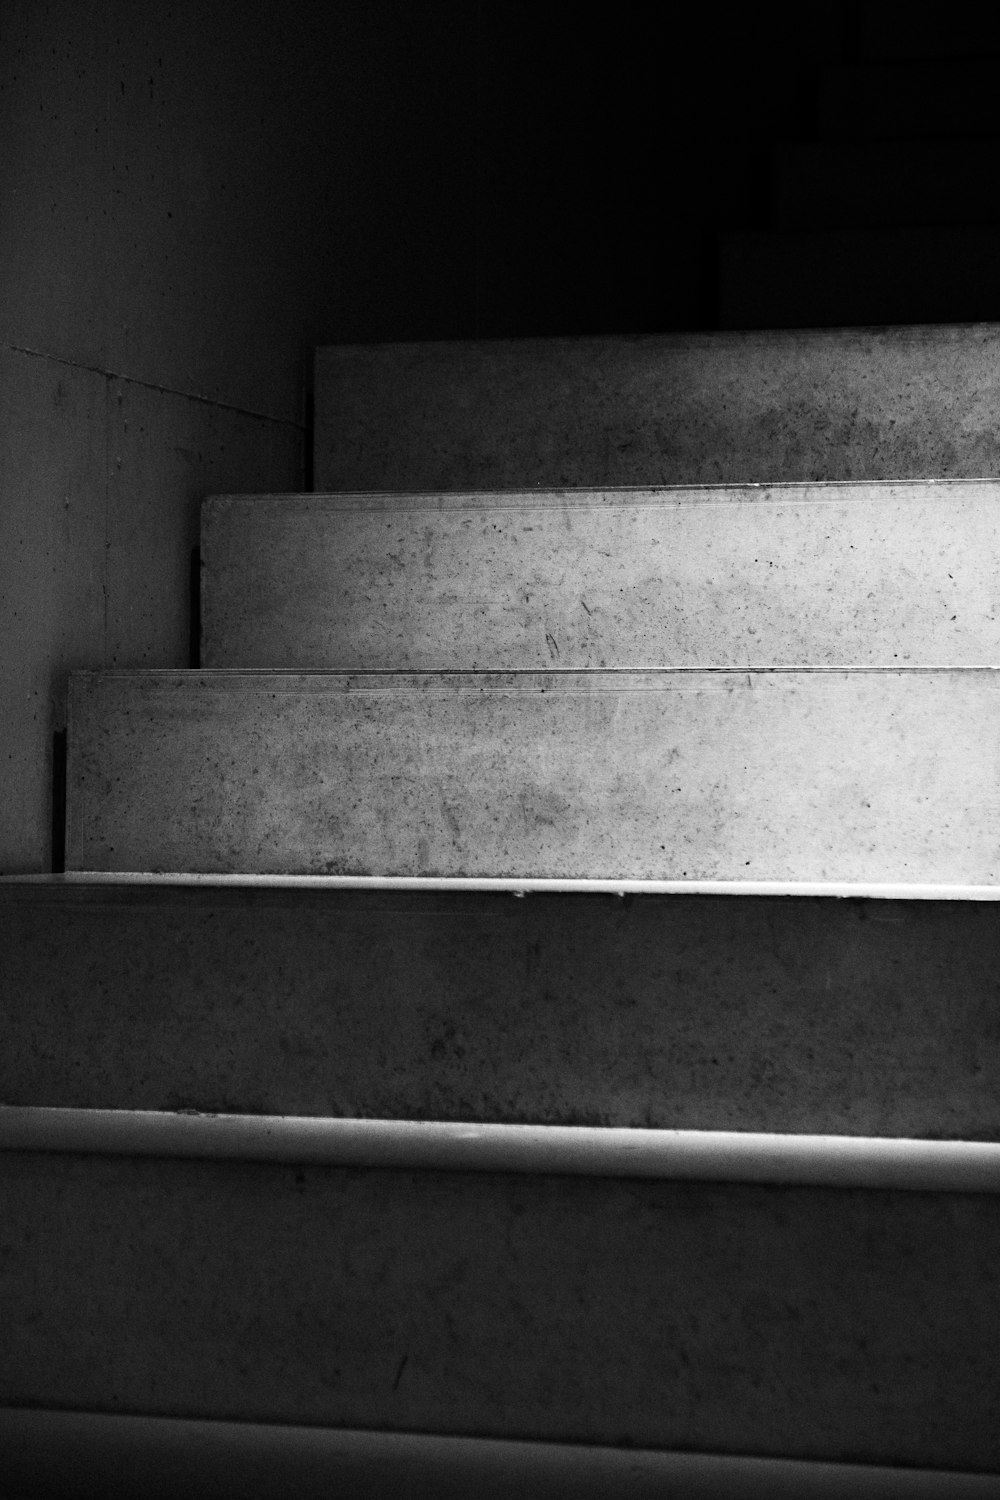 グレースケール写真の灰色のコンクリート階段